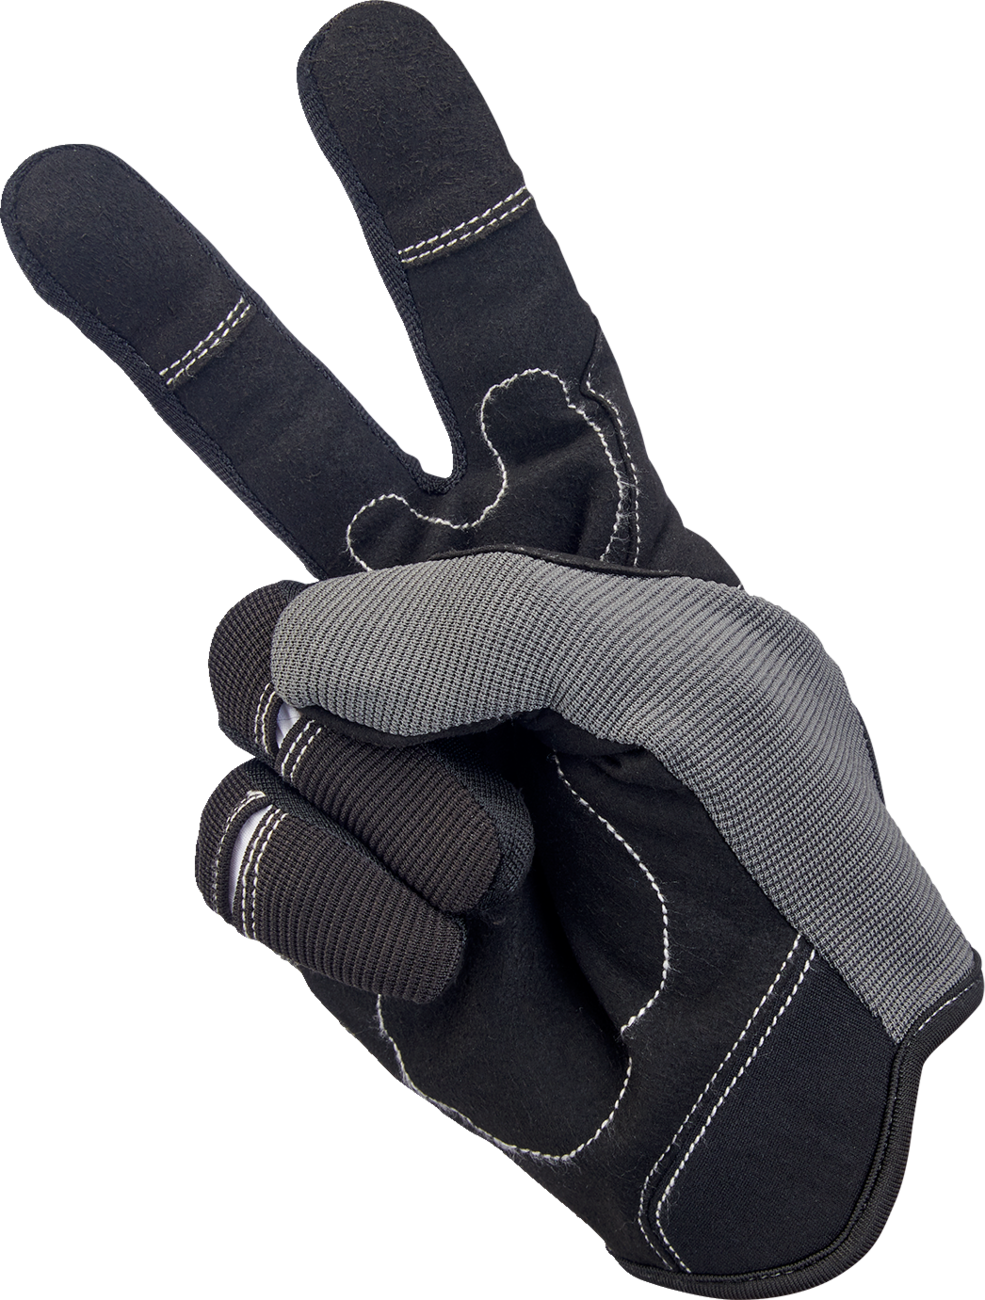 BILTWELL Moto Gloves - Gray/Black - Medium 1501-1101-003